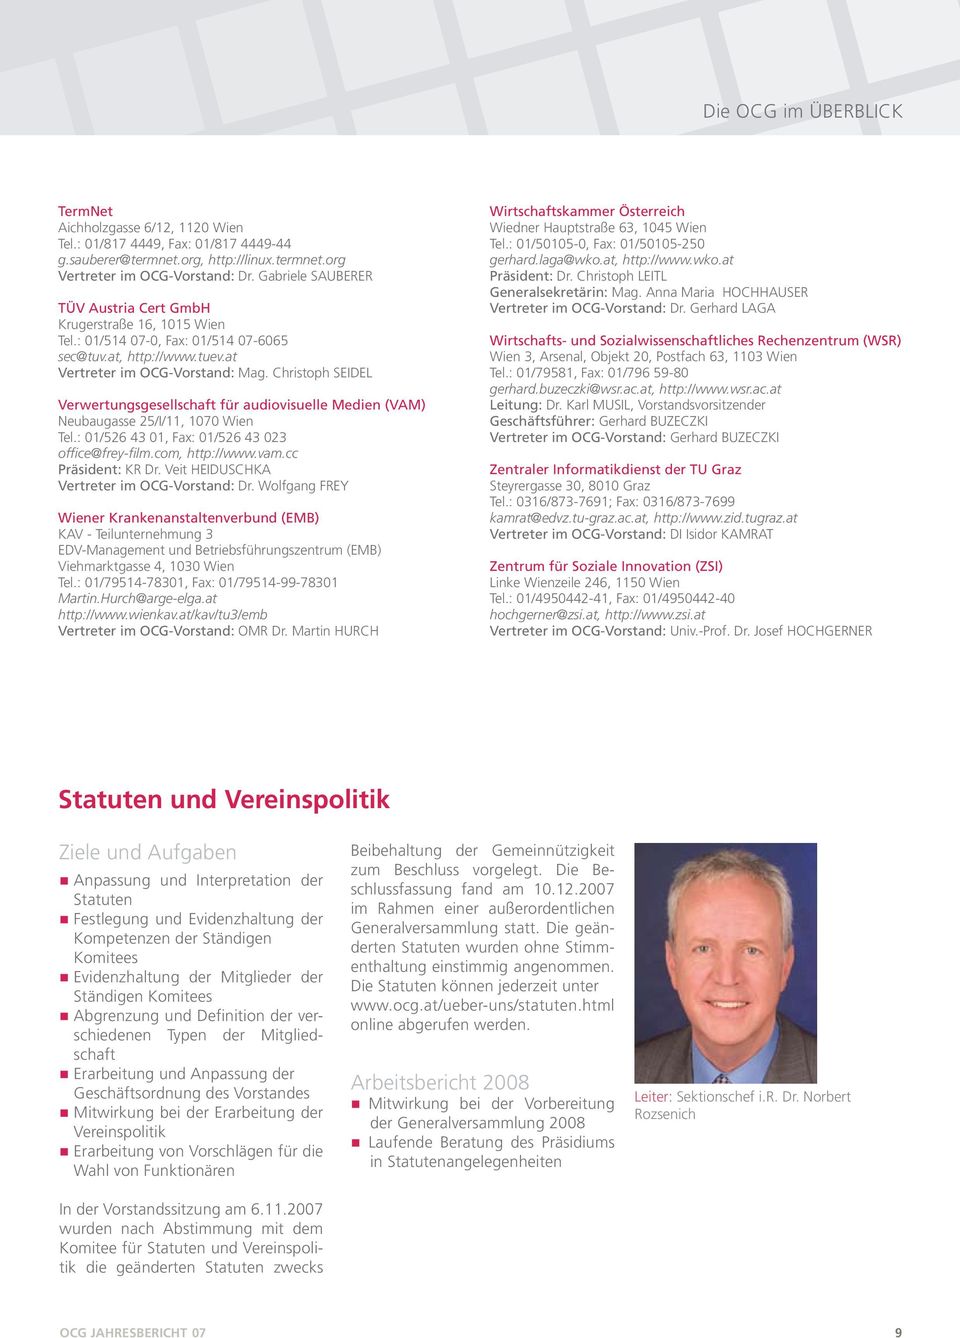 Christoph Seidel Verwertungsgesellschaft für audiovisuelle Medien (VAM) Neubaugasse 25/I/11, 1070 Wien Tel.: 01/526 43 01, Fax: 01/526 43 023 office@frey-film.com, http://www.vam.cc Präsident: KR Dr.